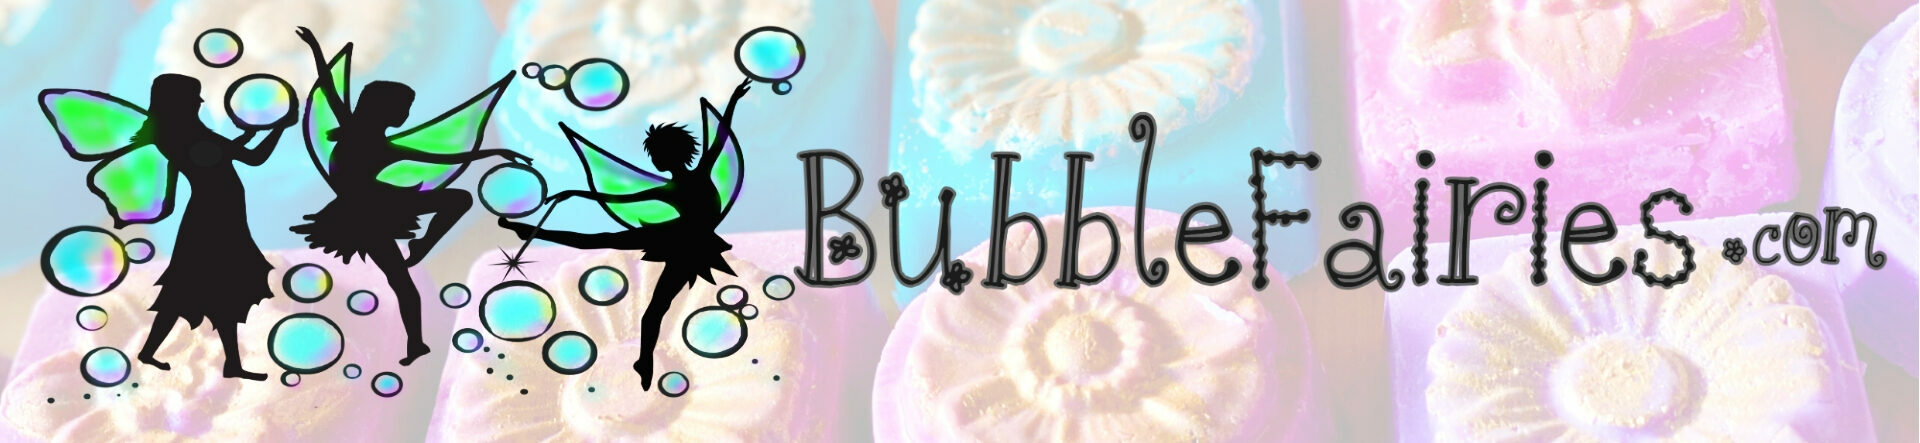 Bubblefairies.com